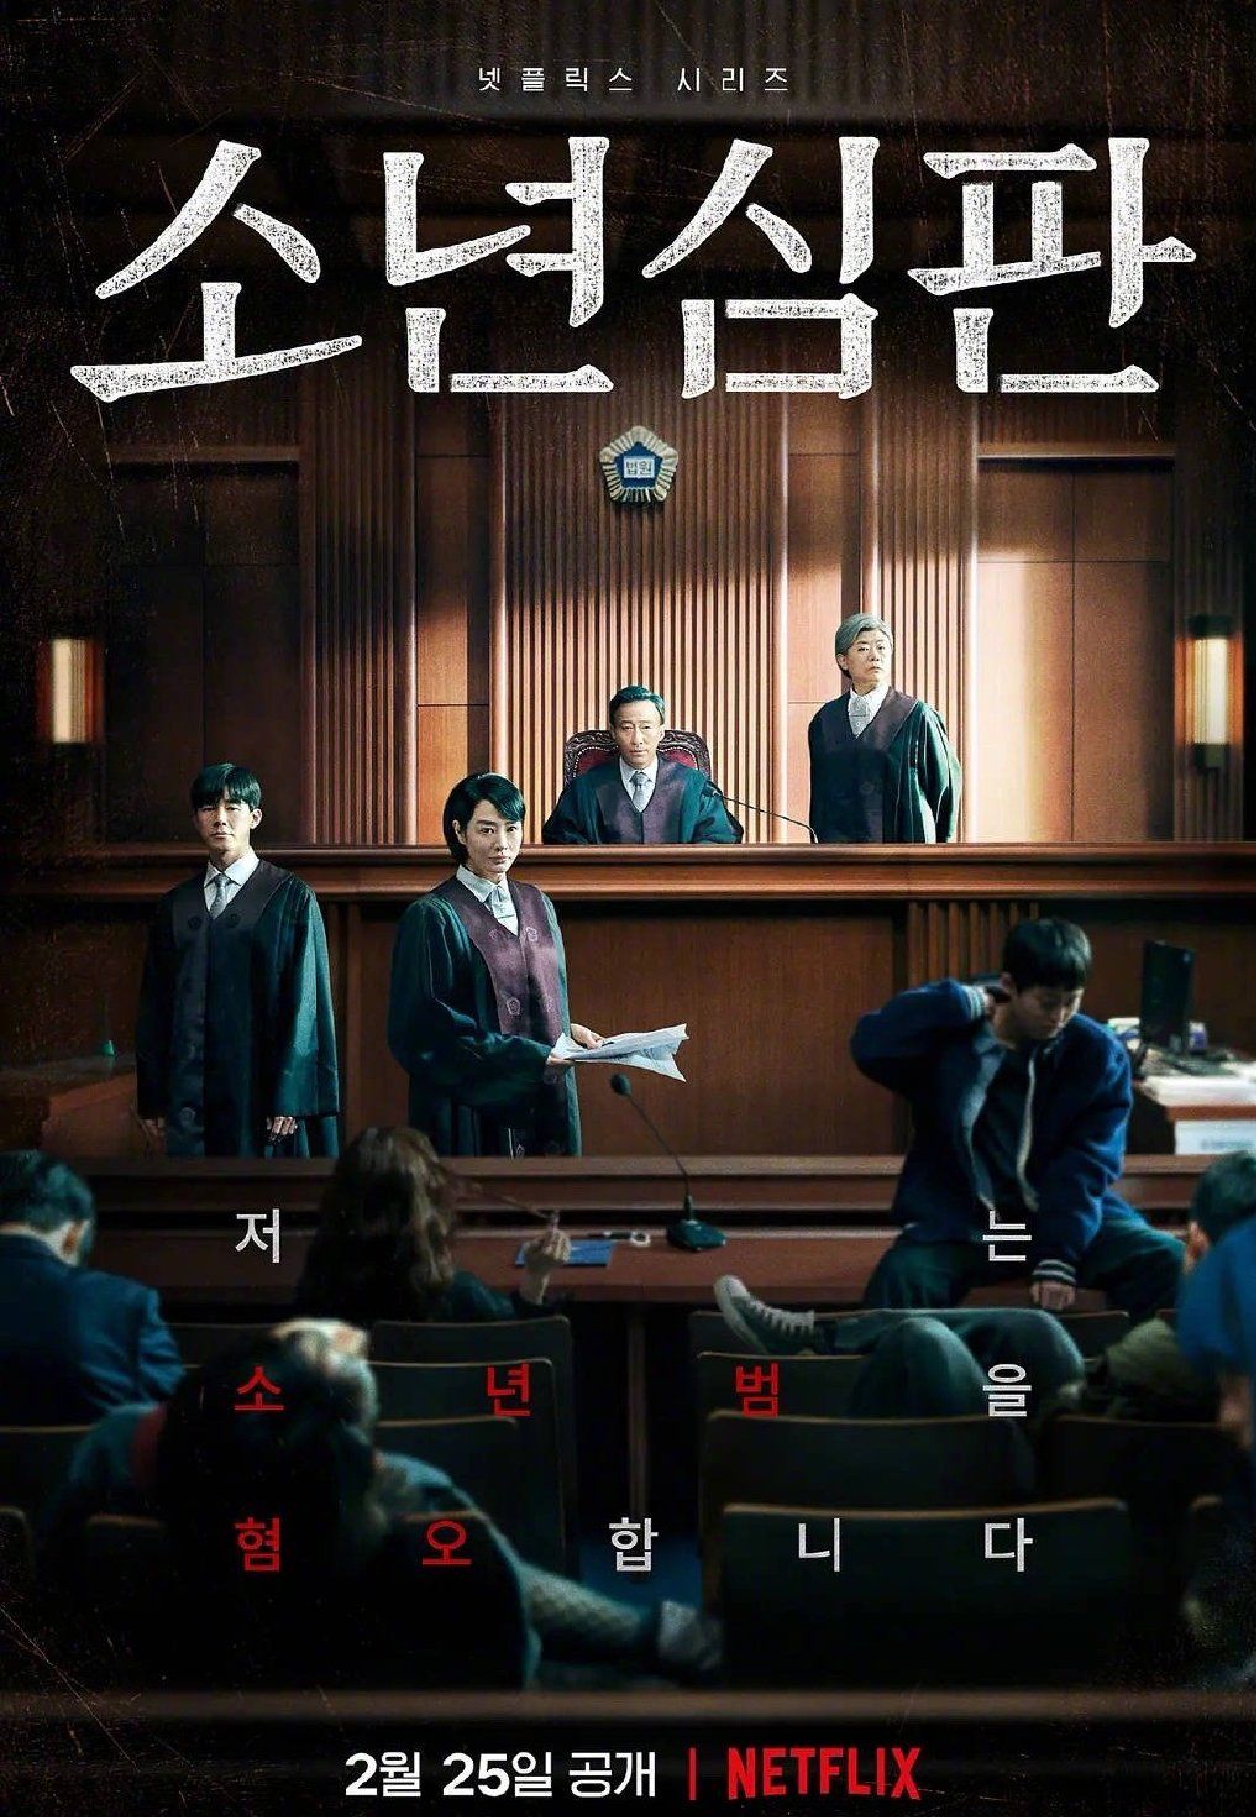 韩剧《少年法庭》将制作第二季 阵容在讨论阶段